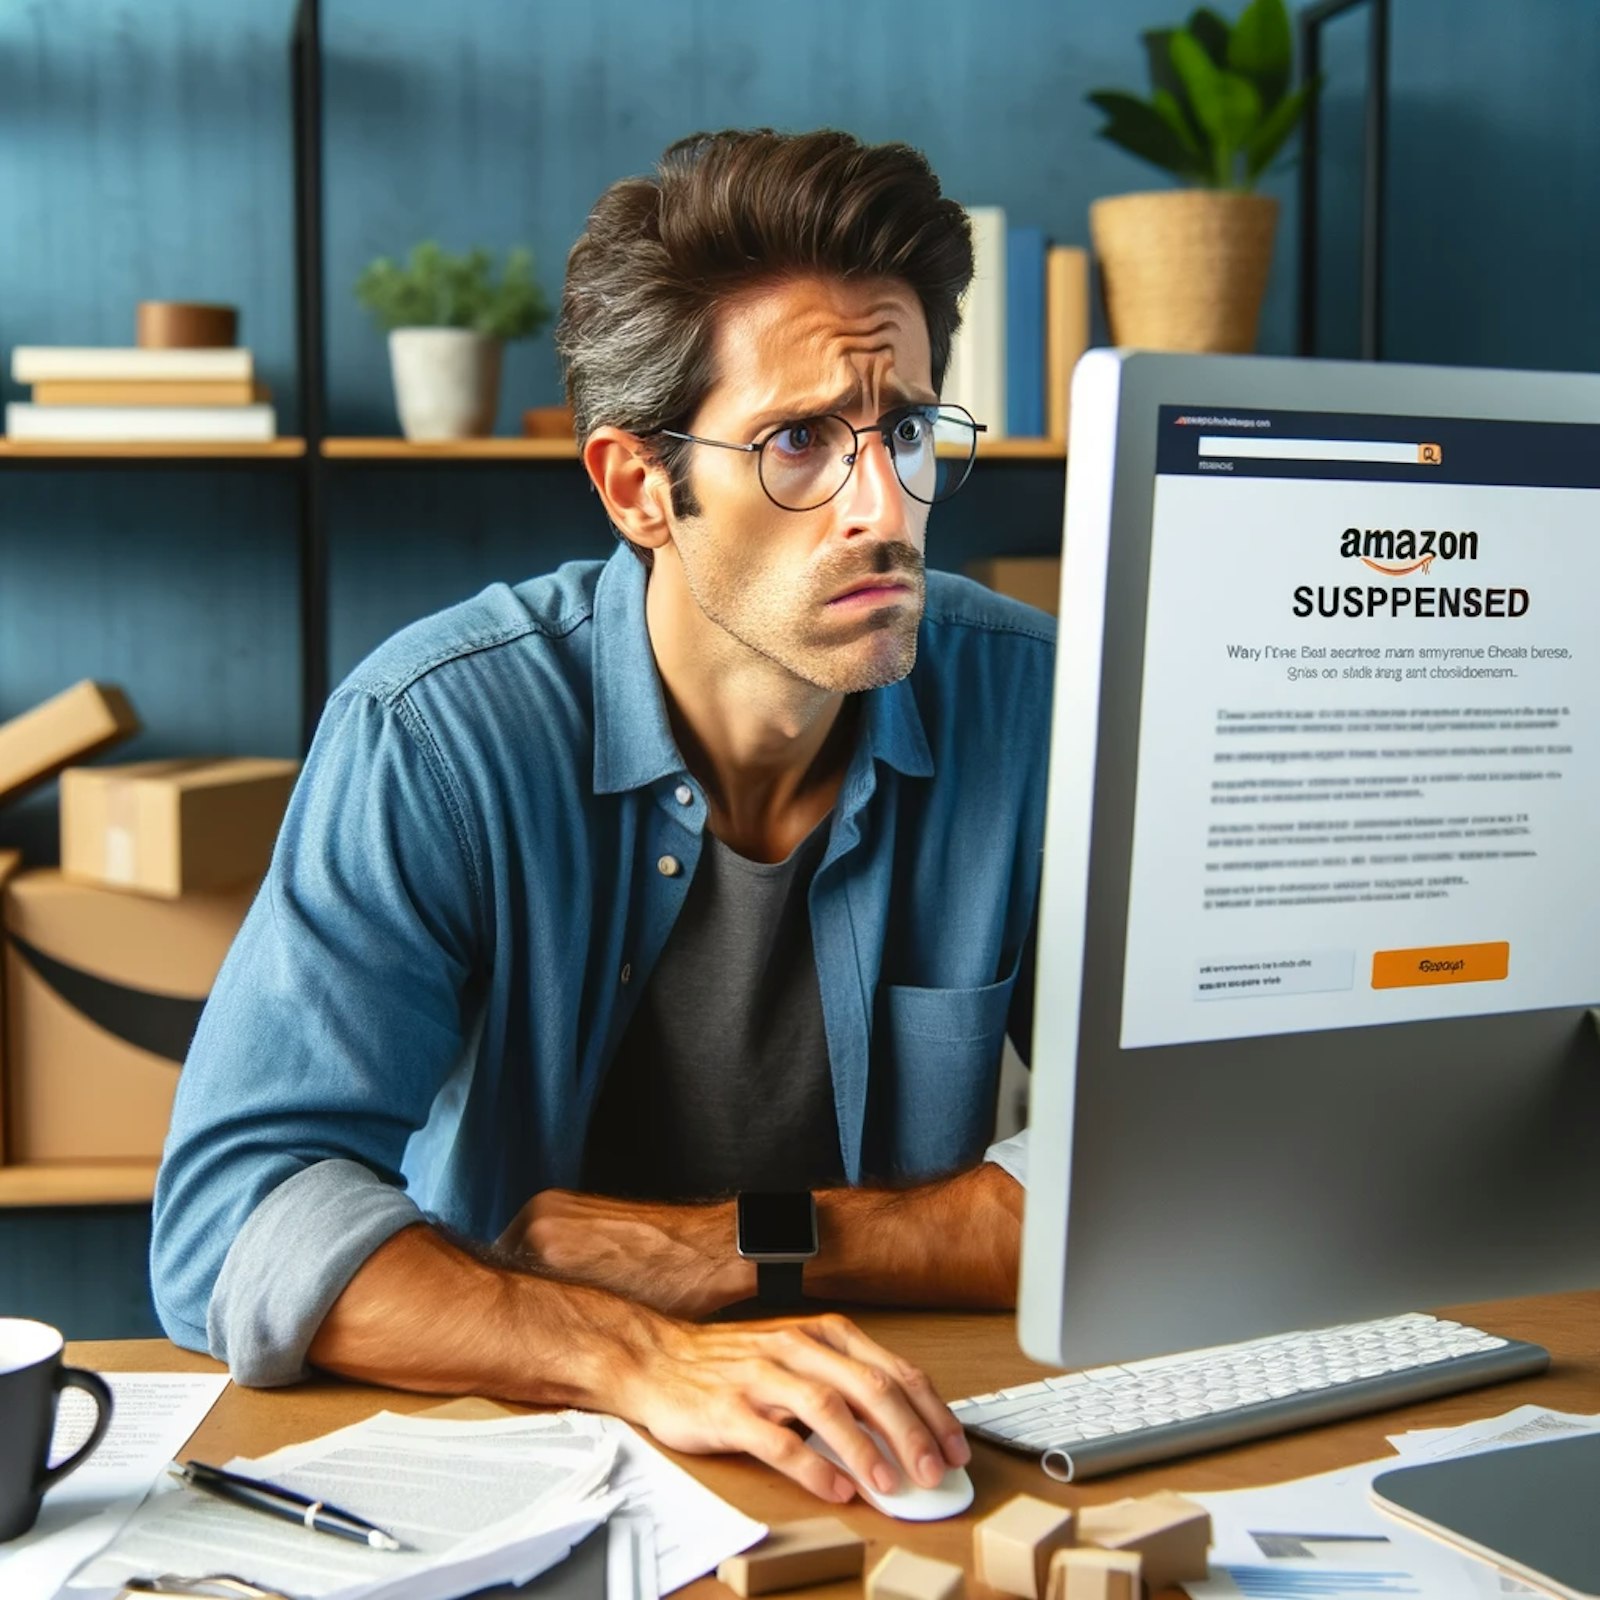 Vendeur en ligne inquiet, assis devant un ordinateur dans un bureau à domicile, avec à l'écran une notification de suspension de son compte vendeur Amazon, entouré de documents éparpillés et d'une tasse de café en arrière-plan